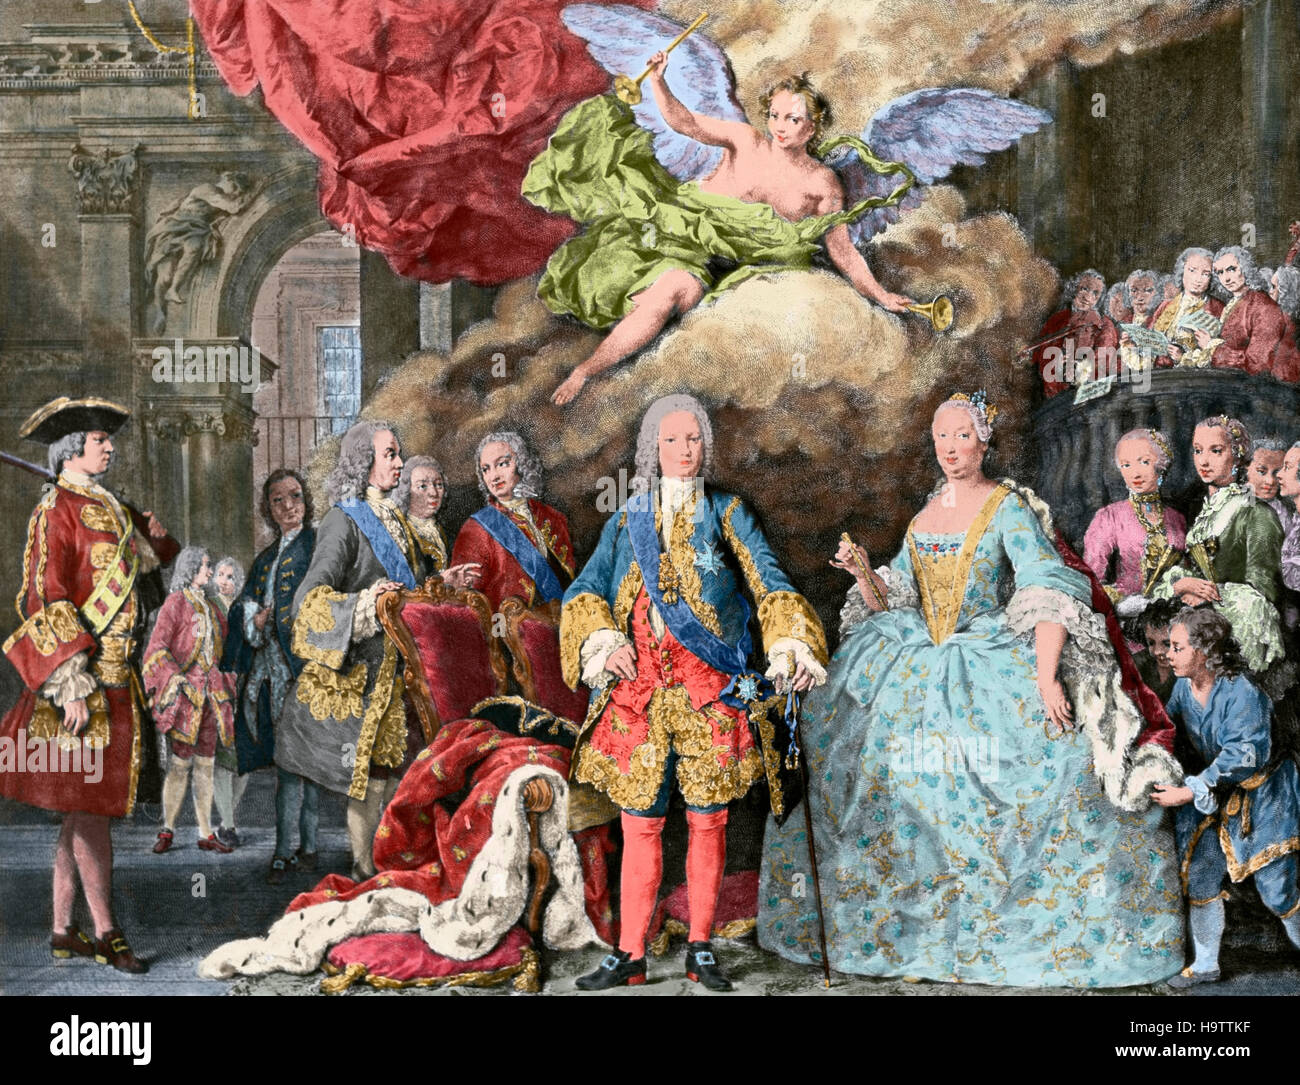 Ferdinando VI di Spagna (1713-1759). La imparato. Re di Spagna. Ferdinando VI e sua moglie Barbara di Braganza e la sua corte. Incisione del XVIII secolo. Colorati. Foto Stock